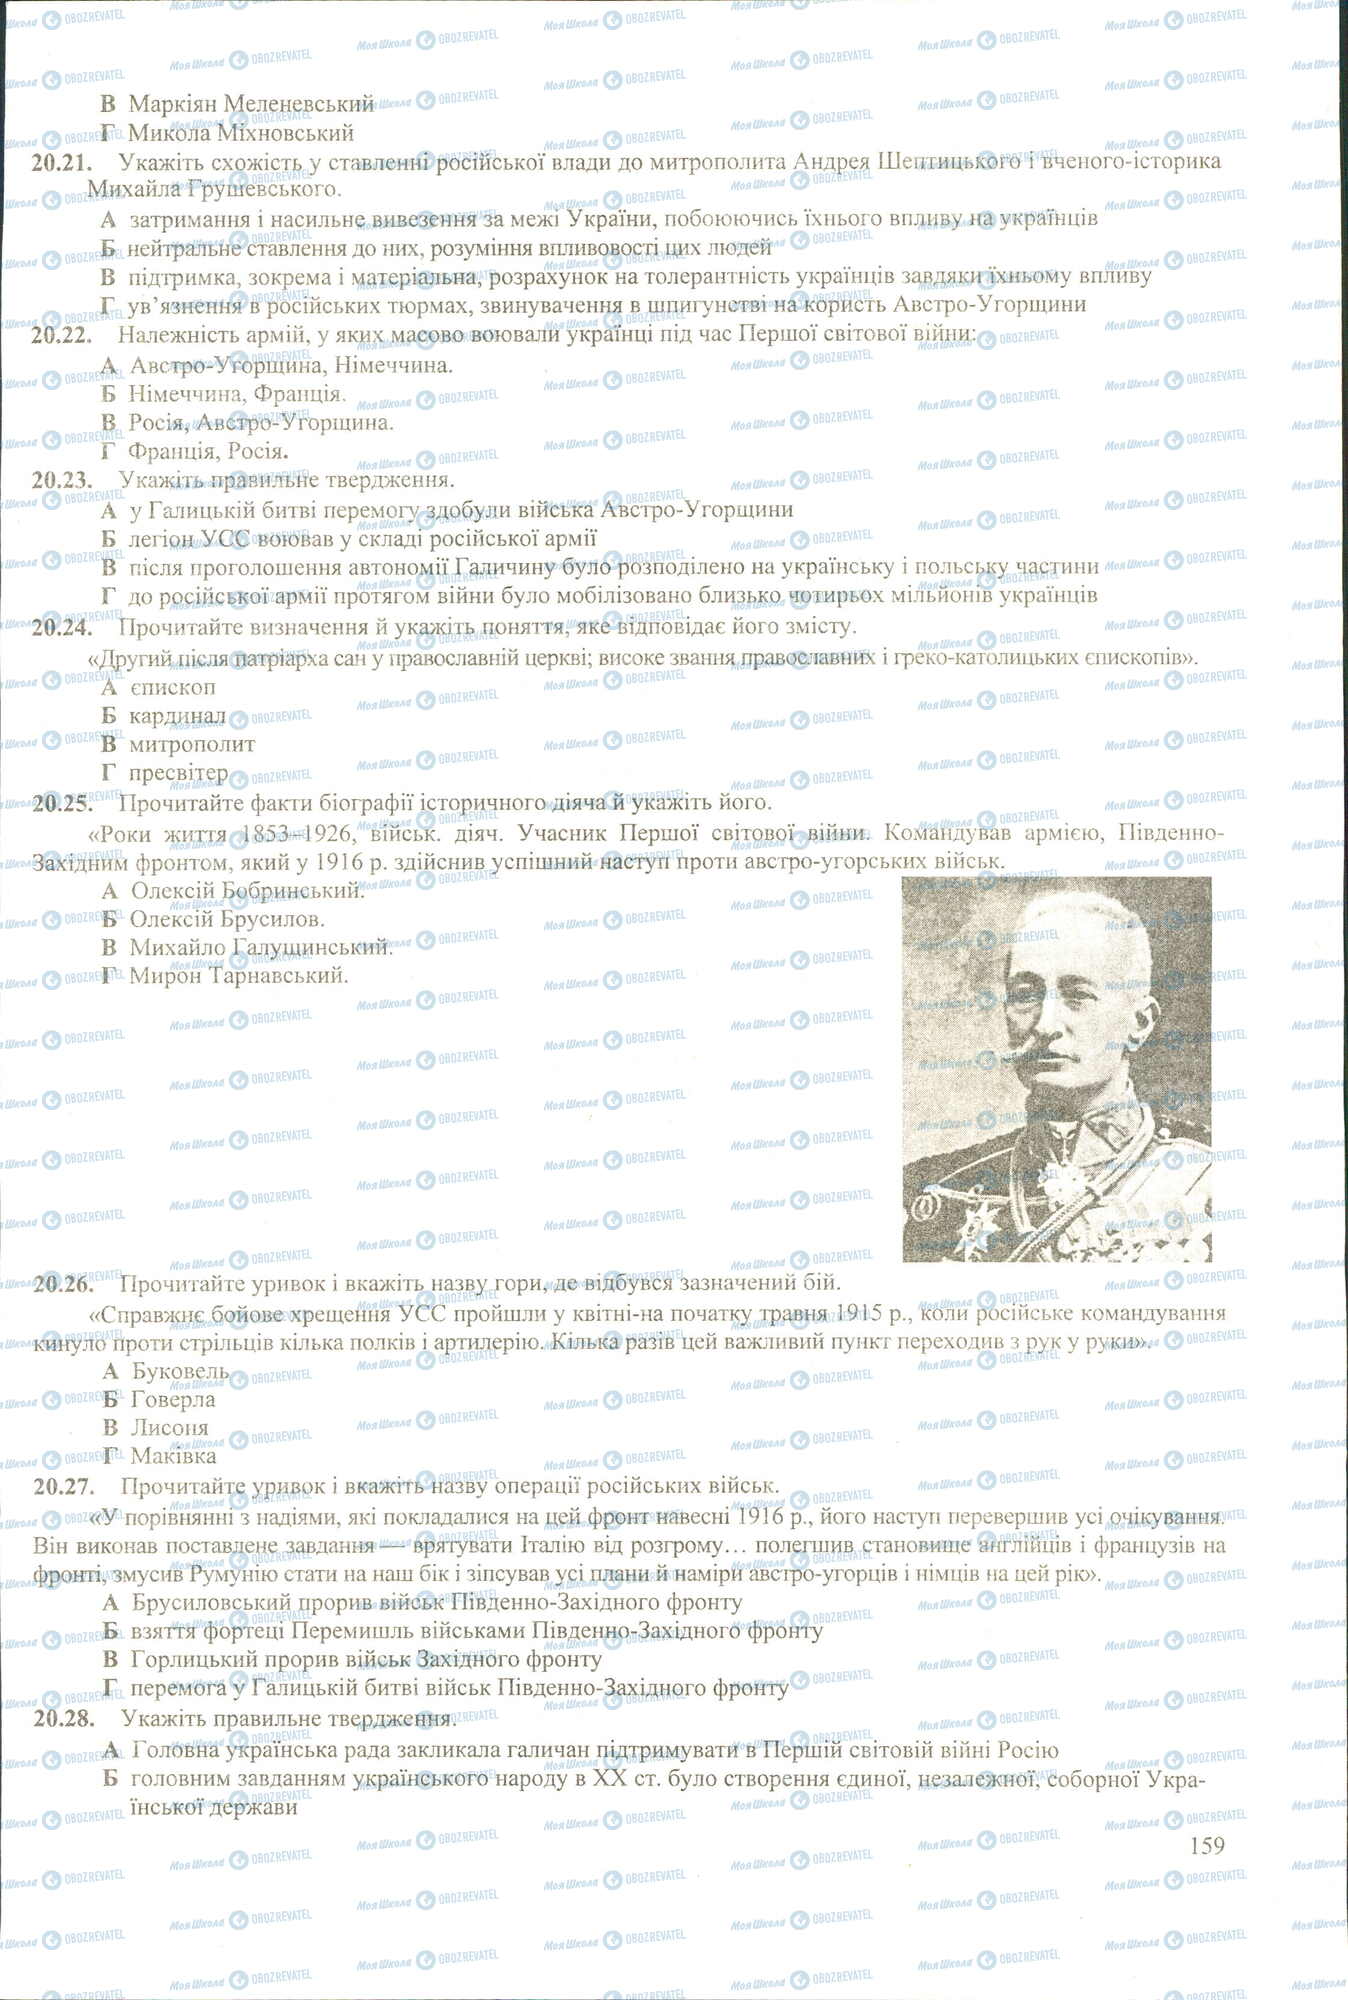 ЗНО История Украины 11 класс страница 21-28